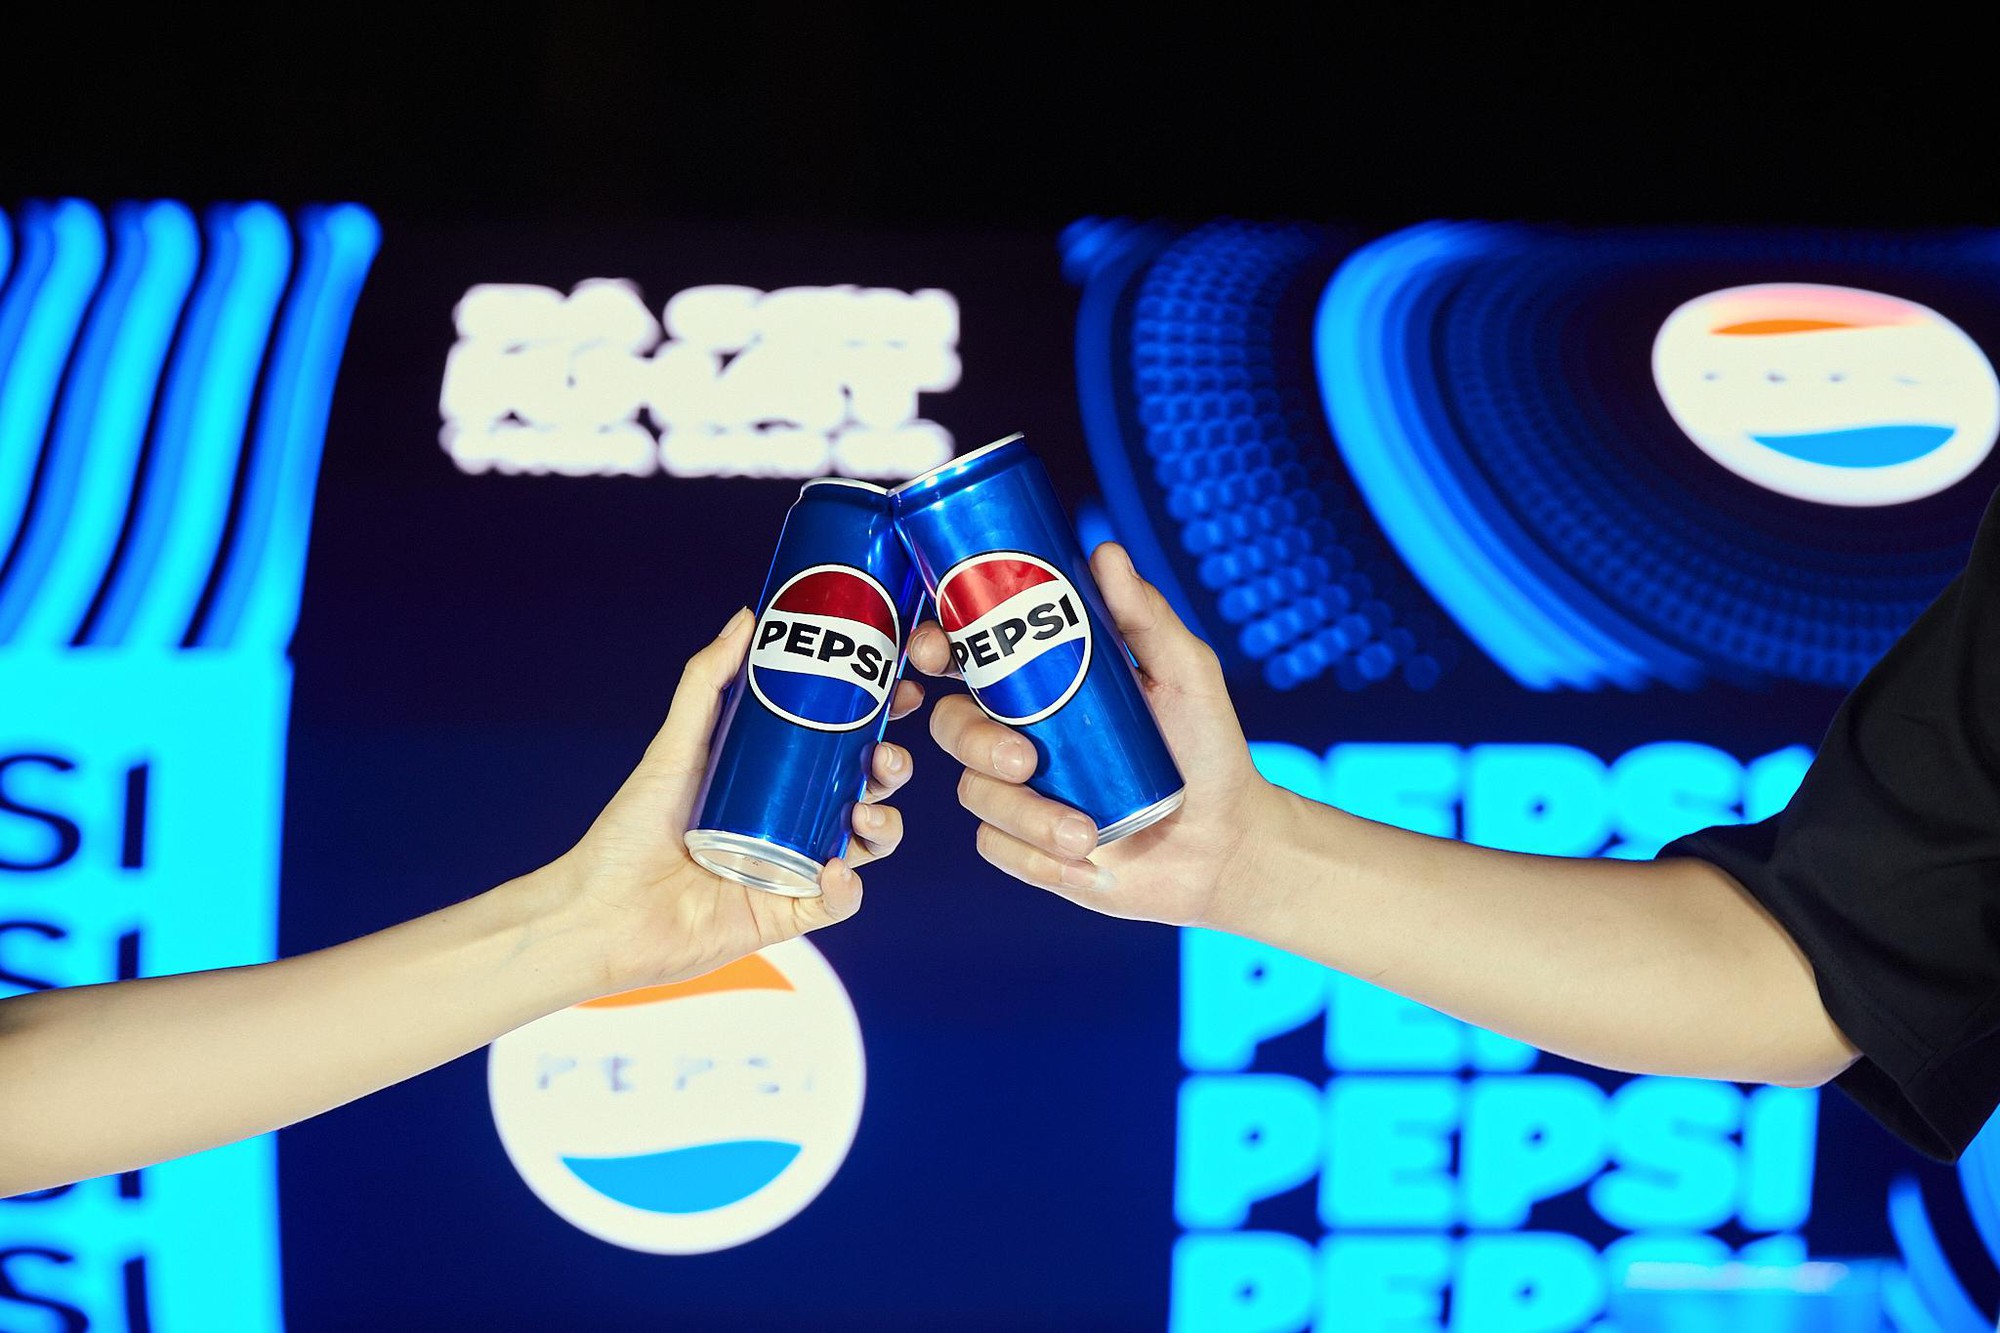 Pepsi đánh dấu kỷ nguyên mới với chuỗi sự kiện bùng nổ đúng chất “Đã cơn khát, thỏa đam mê” - Ảnh 3.